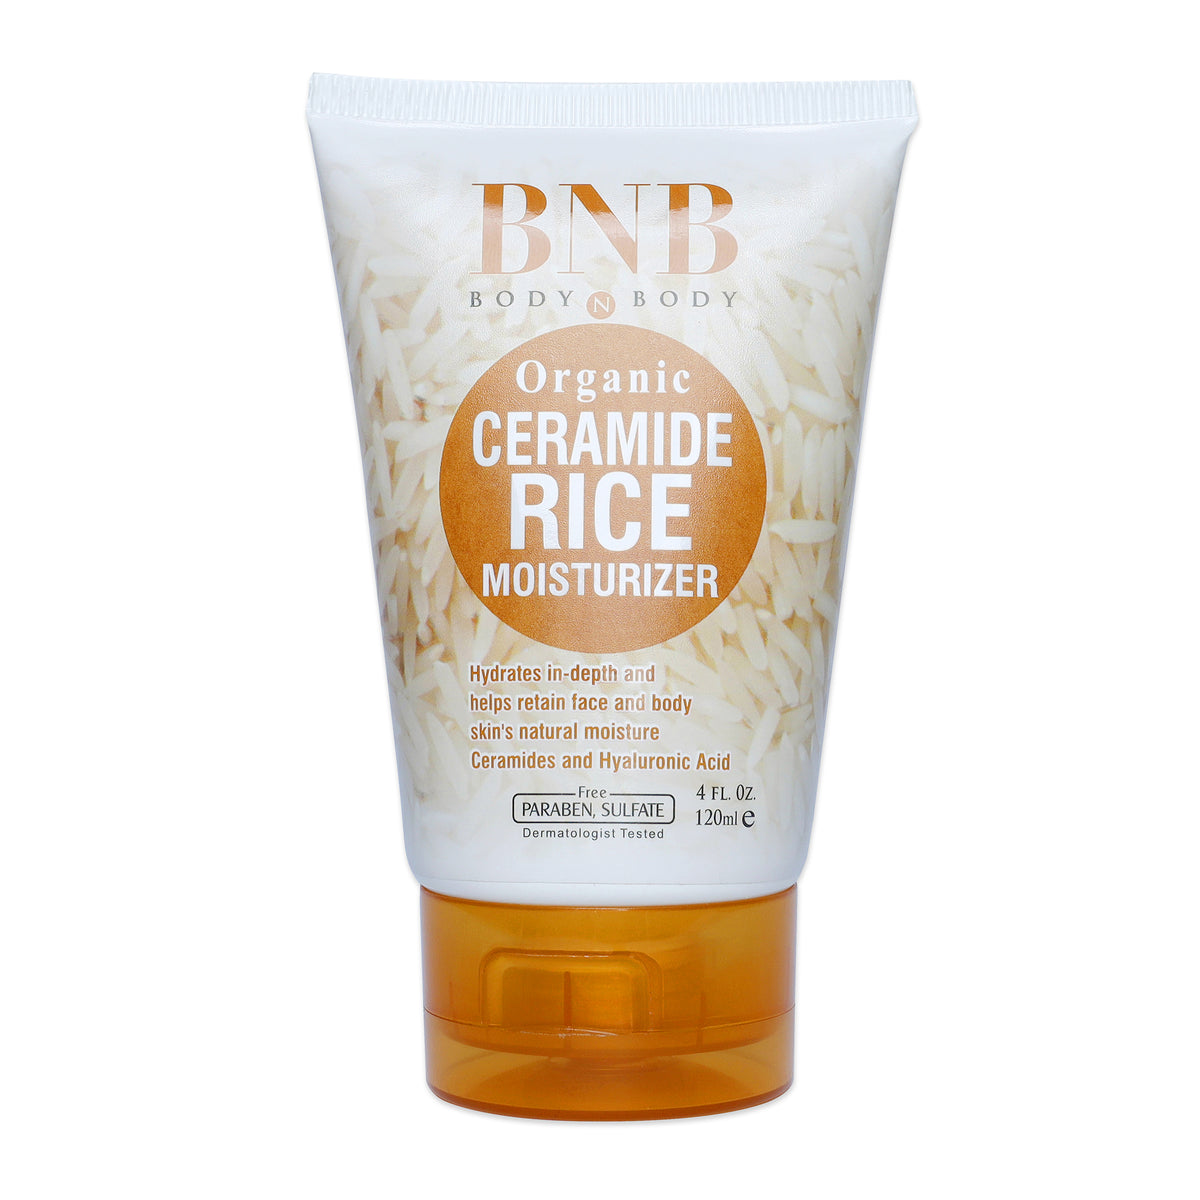 BNB Brightening Glow Kit Rice Scrub Face Wash